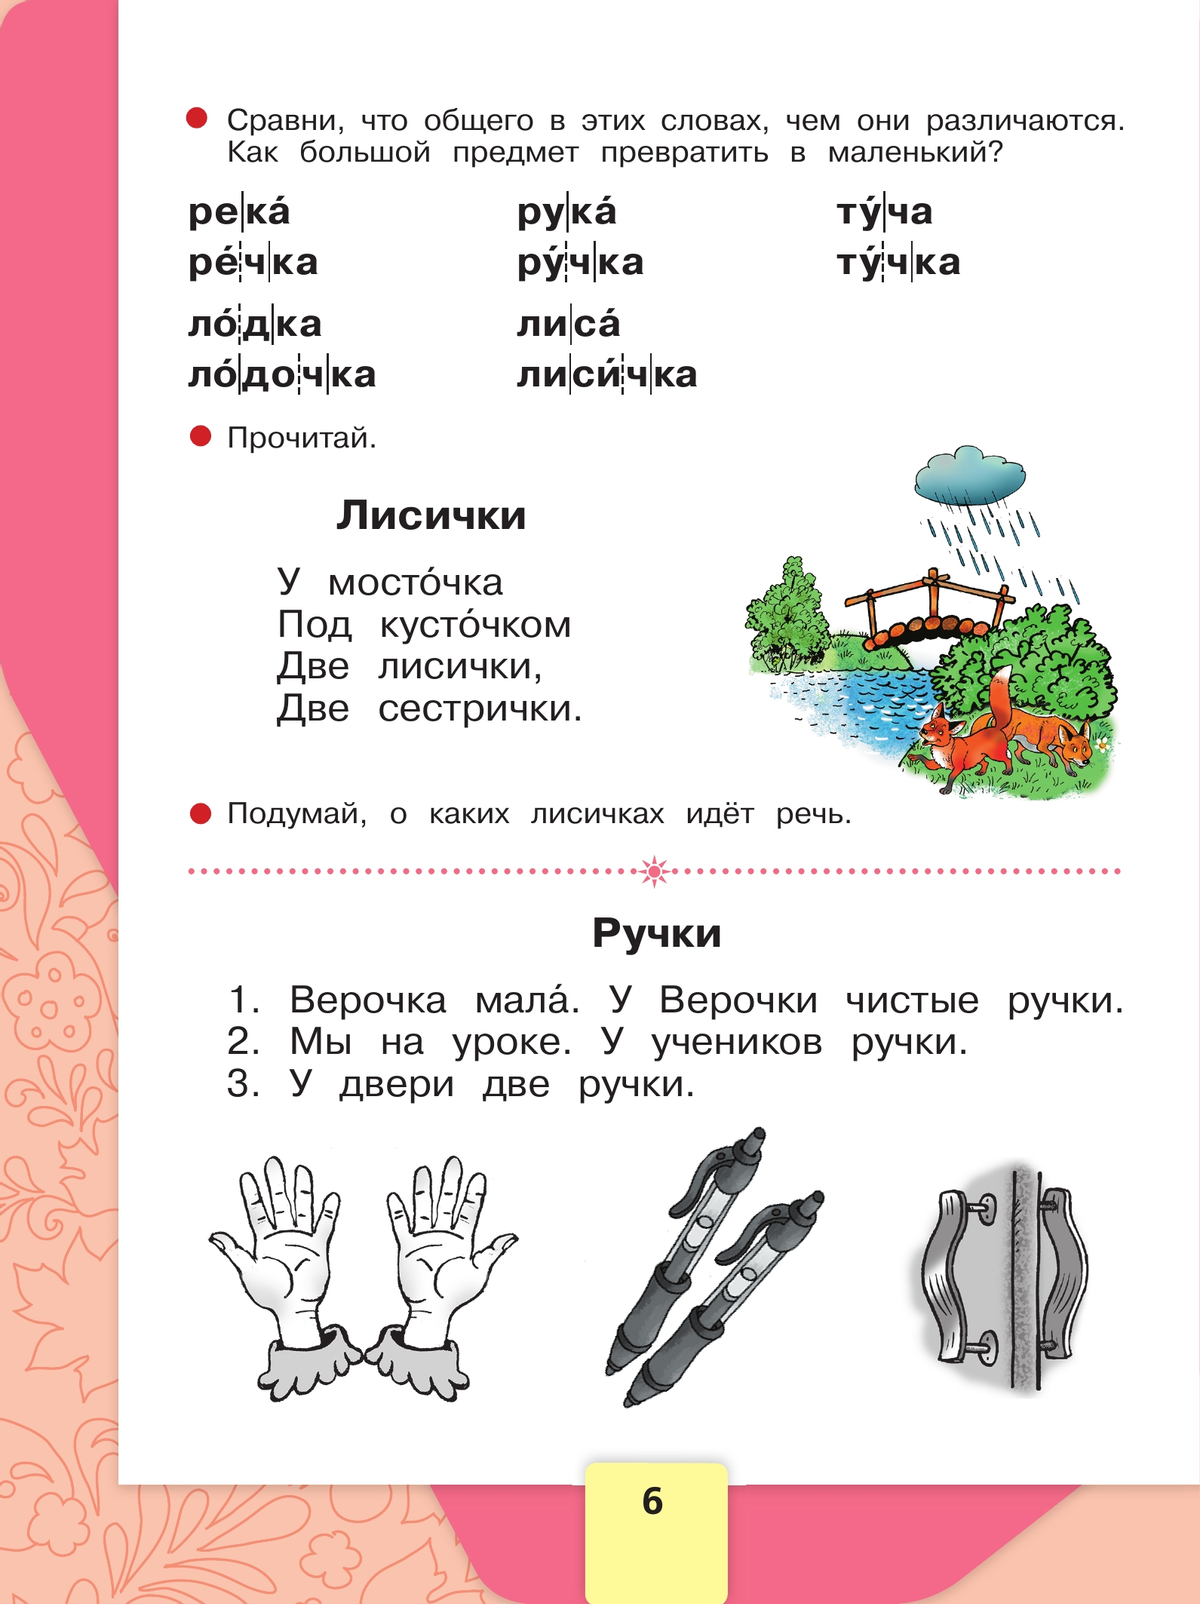 Русский язык. Азбука. 1 класс. Учебник. В 2 ч. Часть 2 4